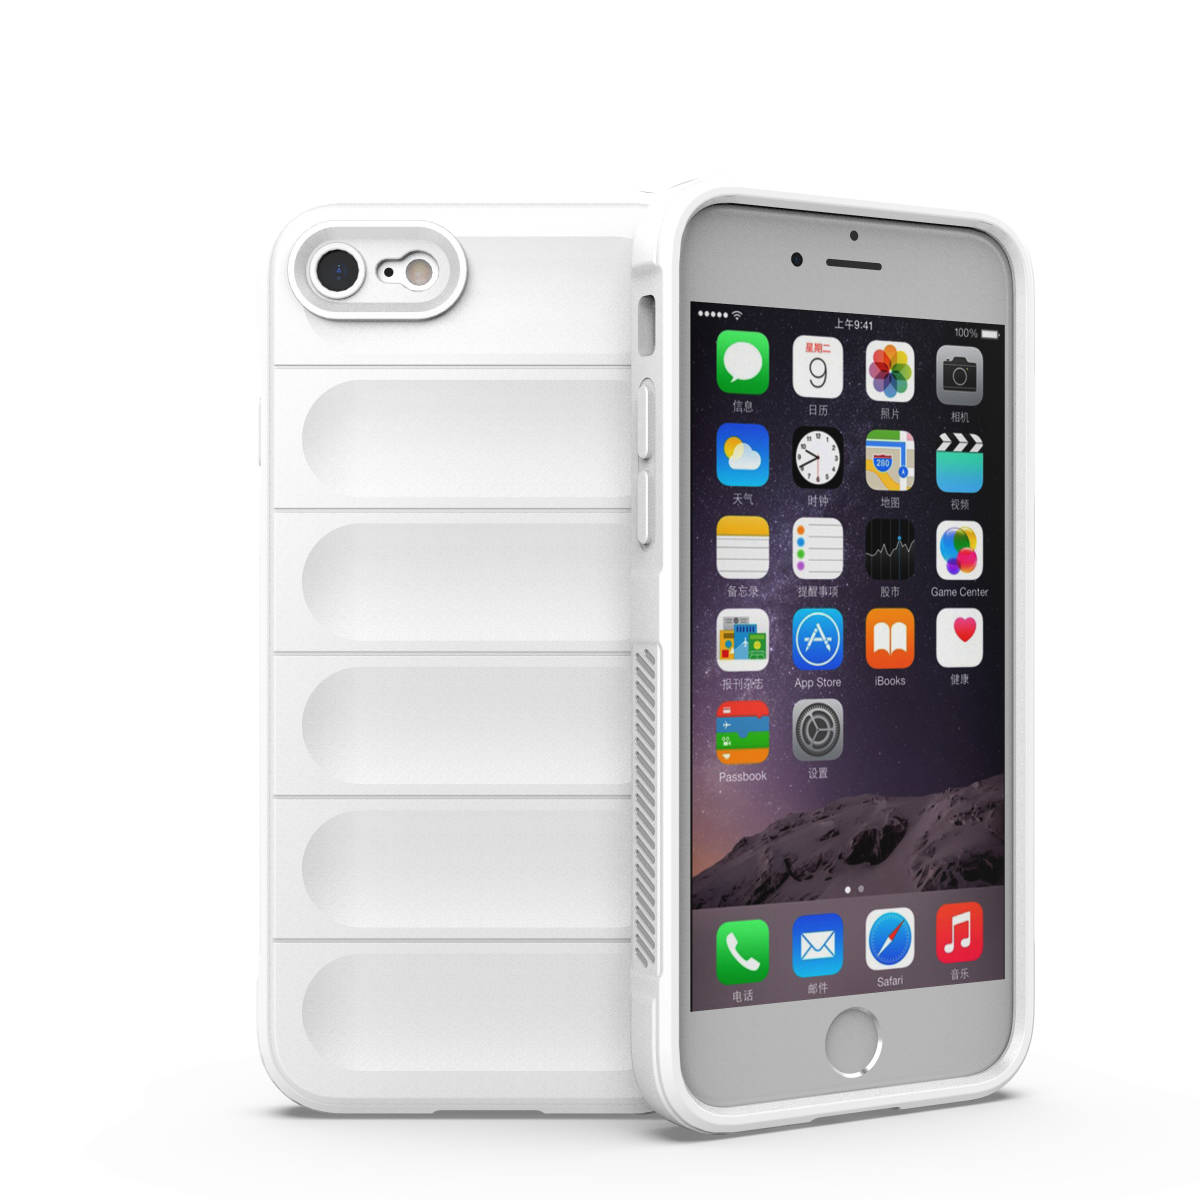 C Инвентаризация White iPhone7 iPhone 8 Case Shock Защита защиты от крышки военные военные сильный шок -резистентный кремниевый эки